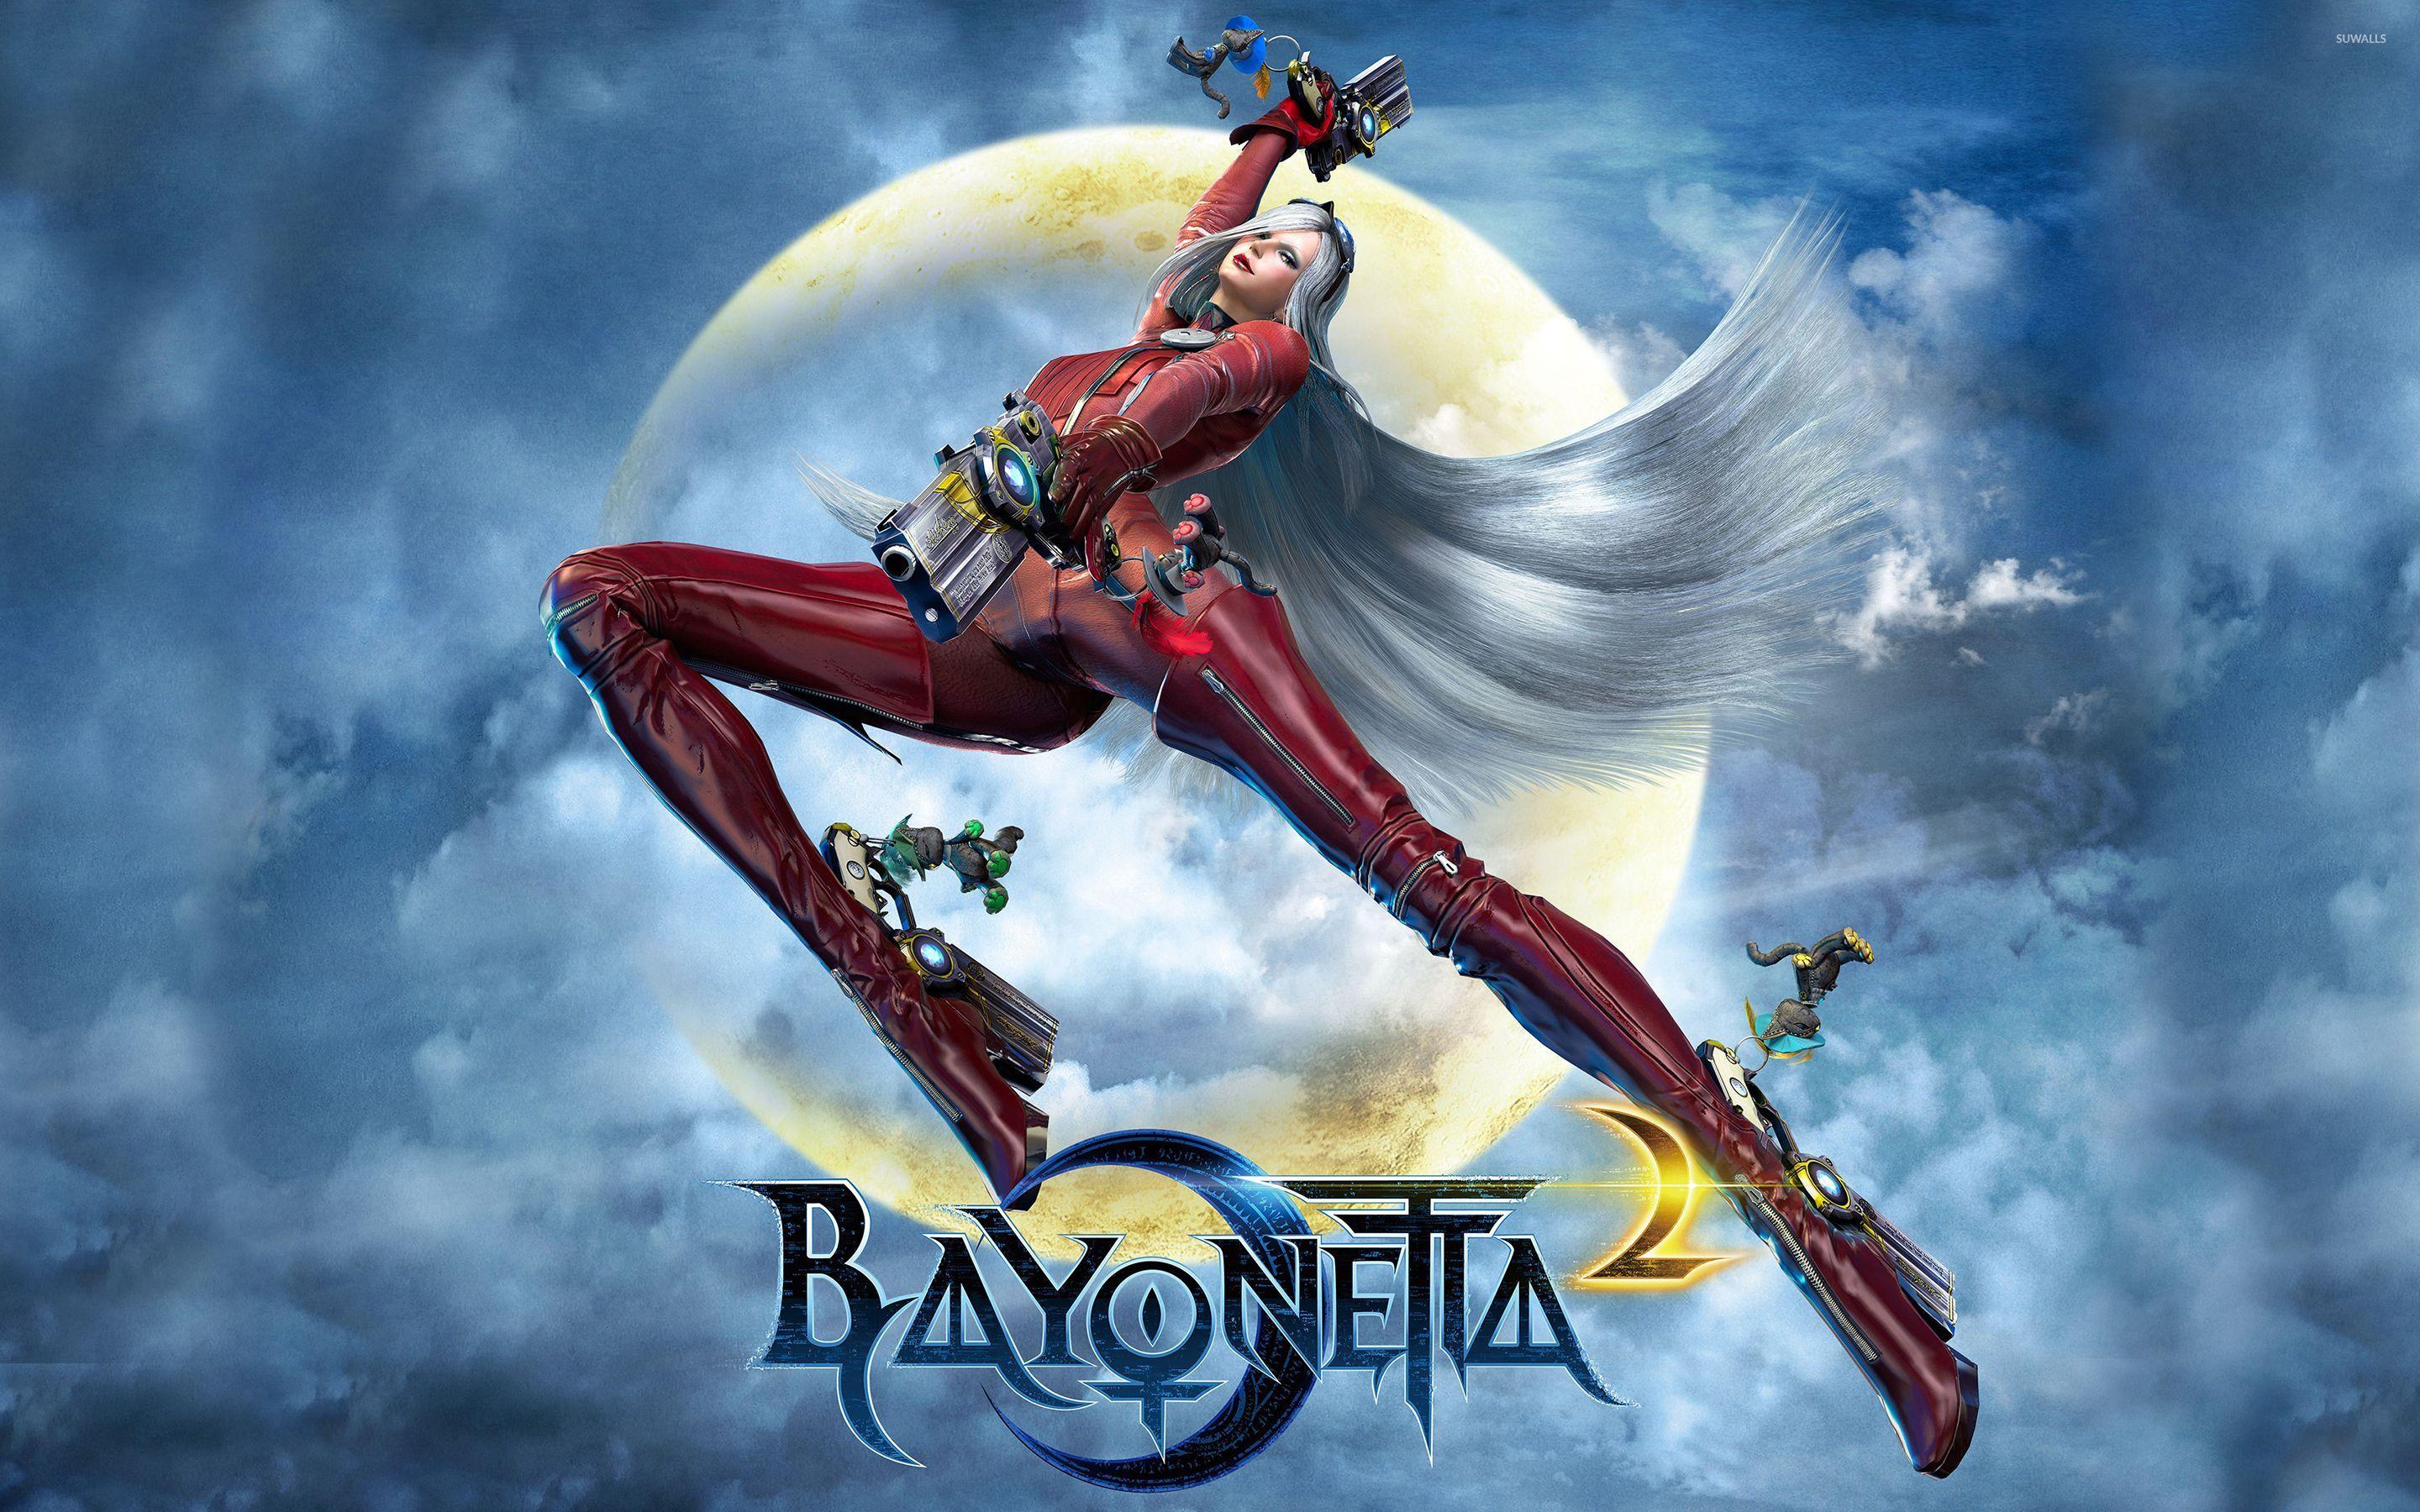 bayonetta bayonetta 2 download free